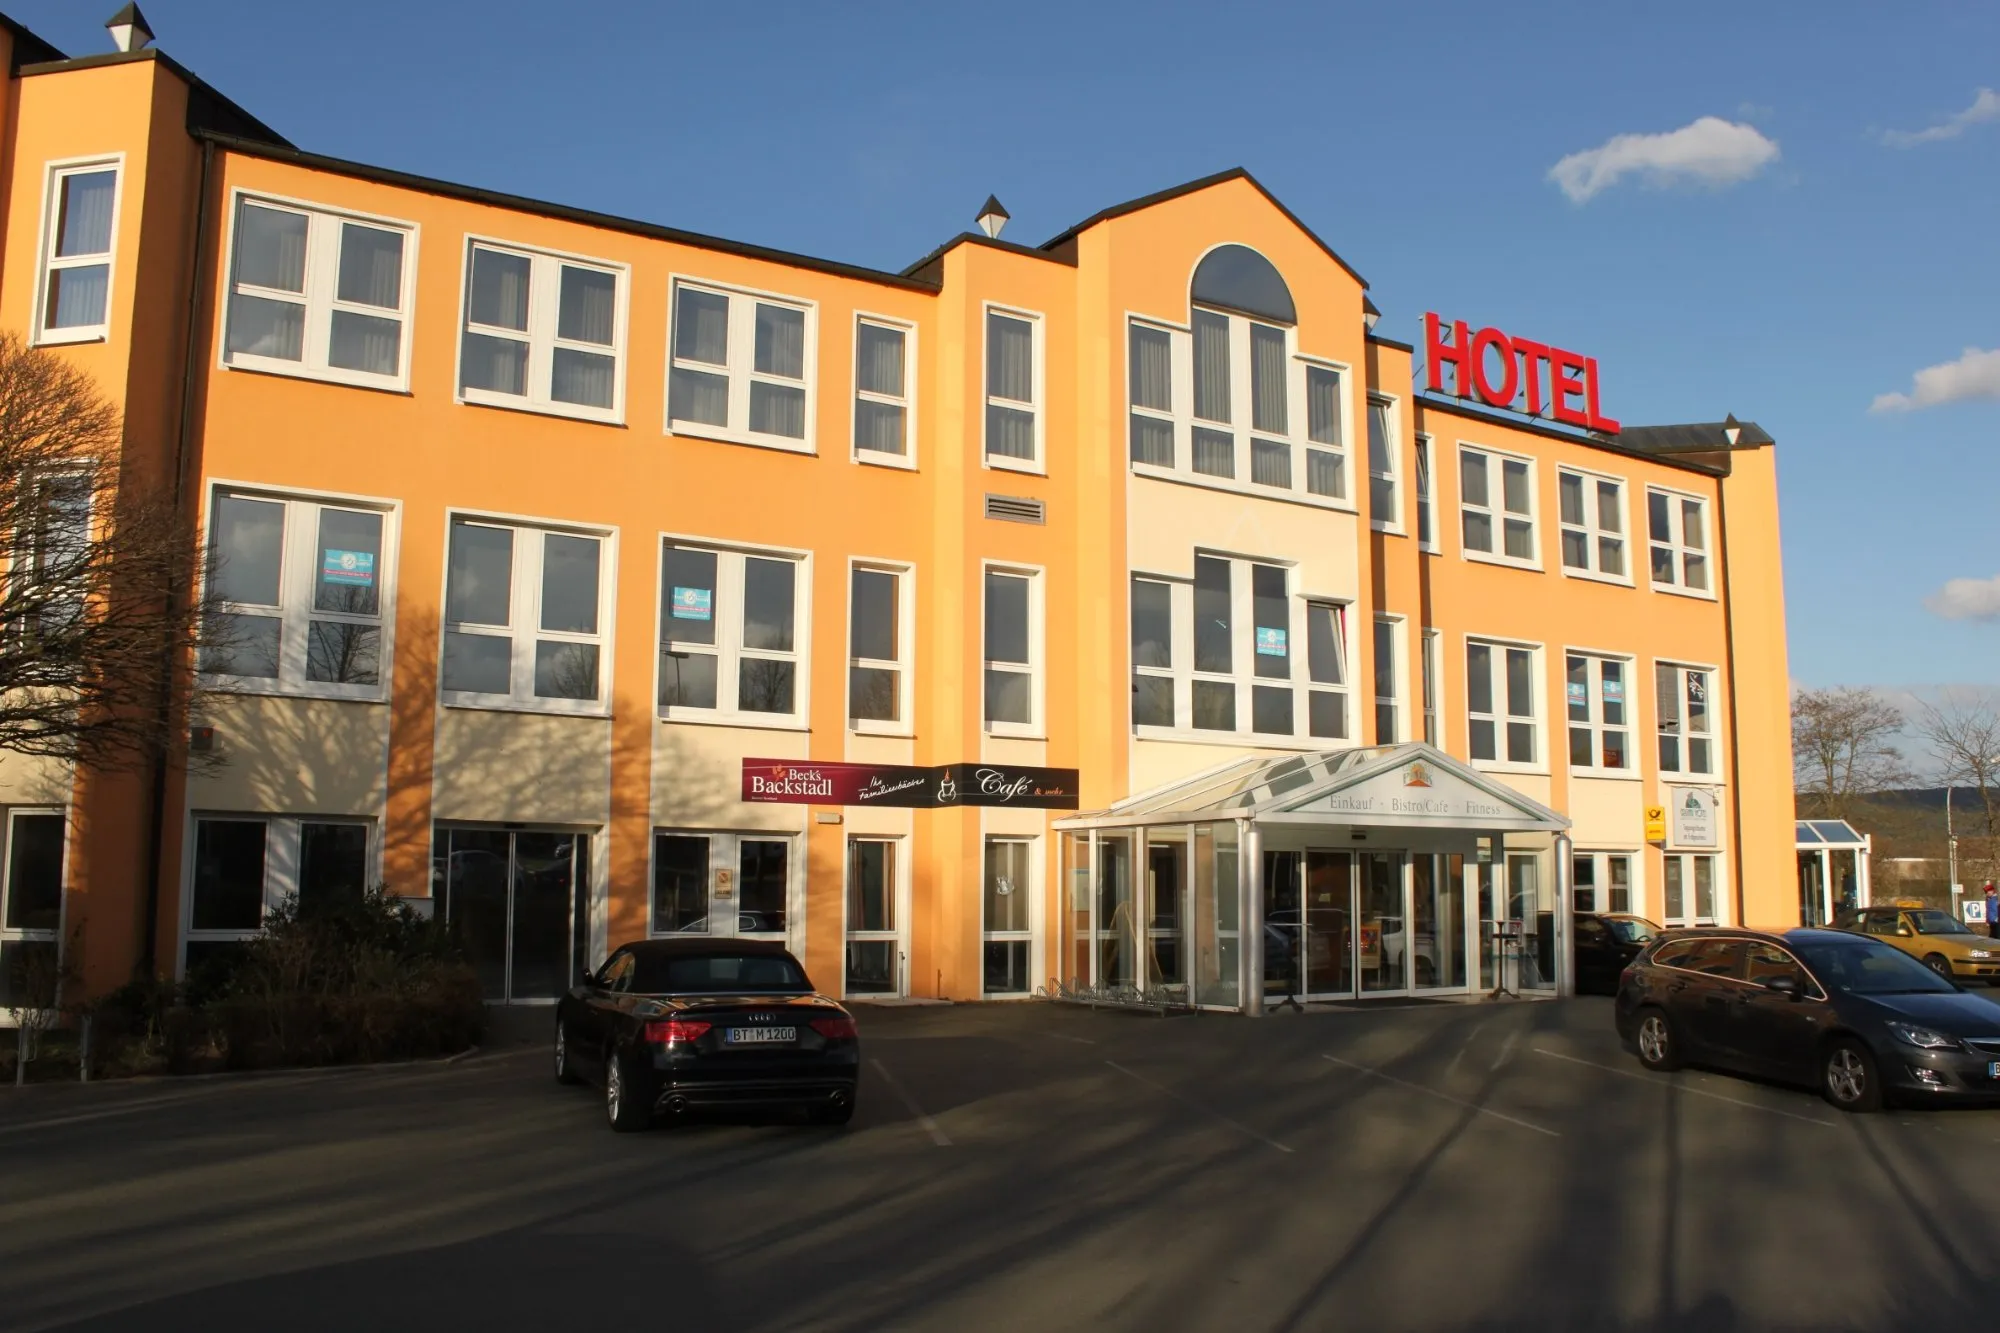 Building hotel Grunau Hotel - MK² GmbH